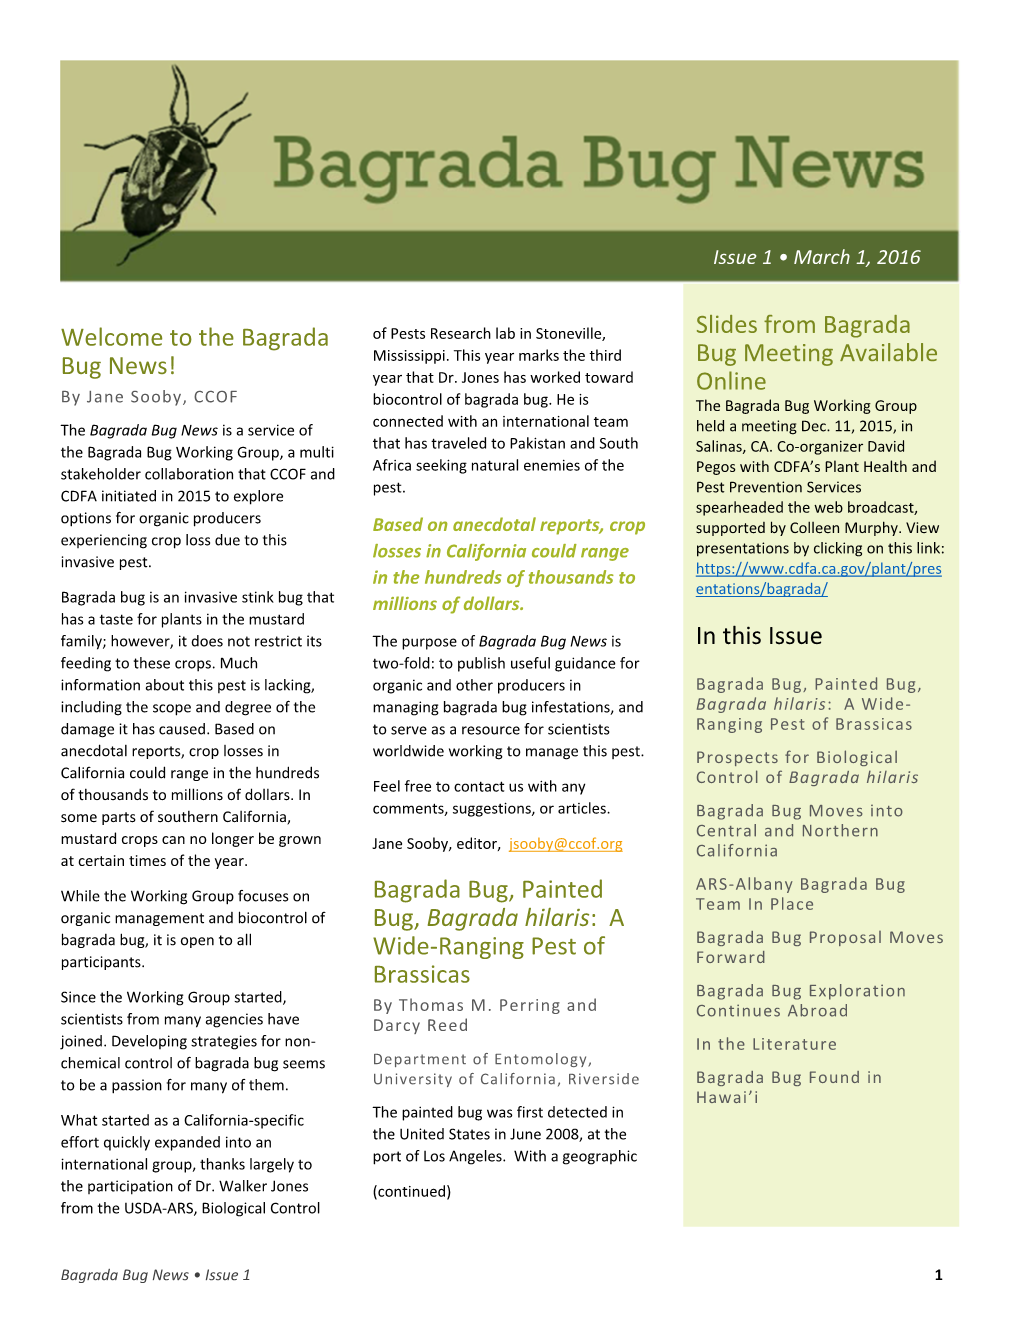 Bagrada Bug, Painted Bug, Bagrad